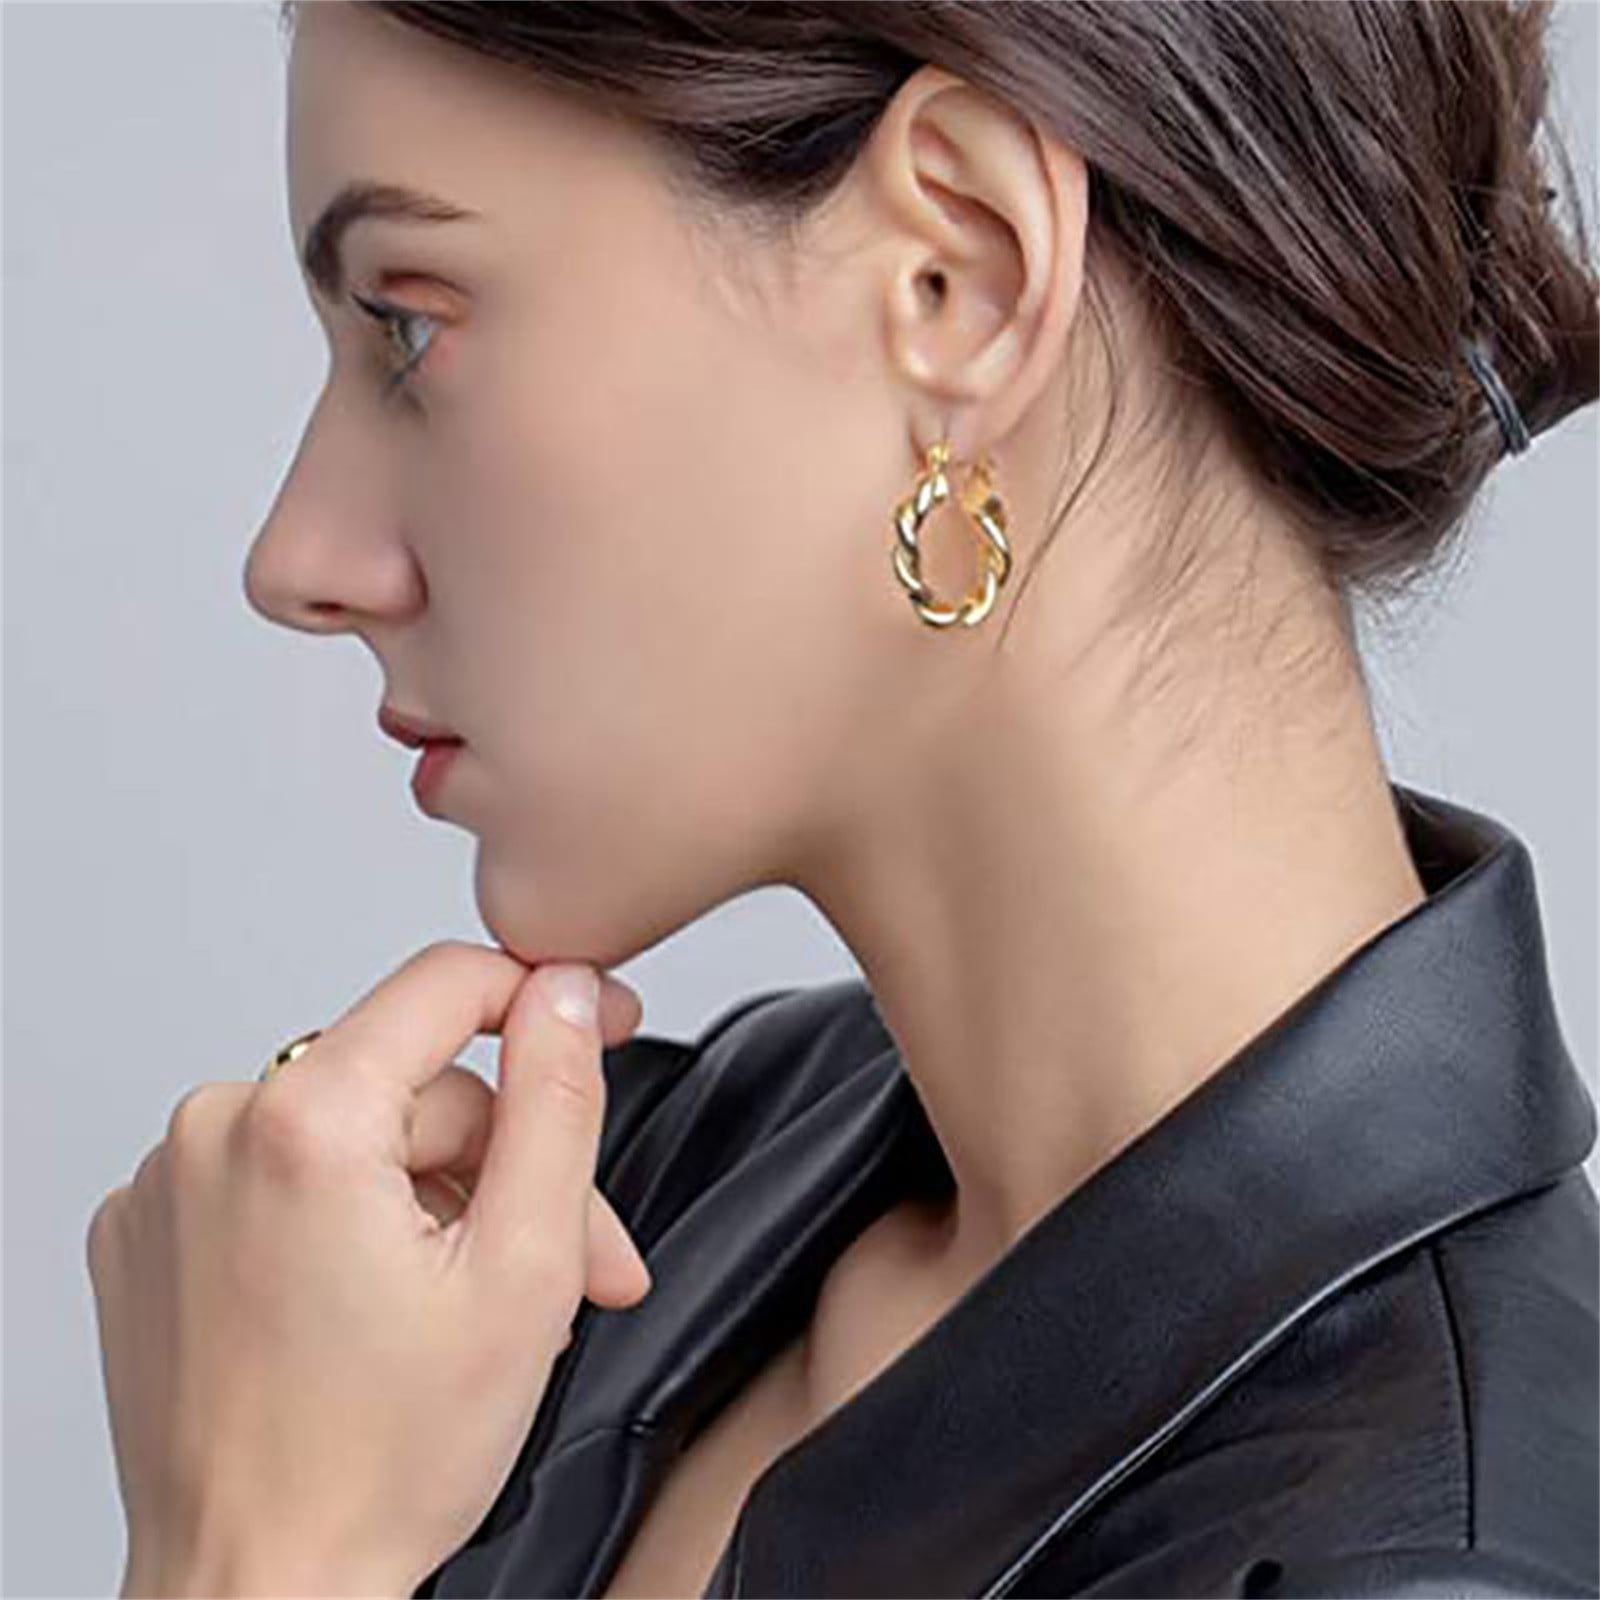 Details about   Open Circle Studs Geometric Teardrop CZ Earrings Women Girls 14K Solid Gold